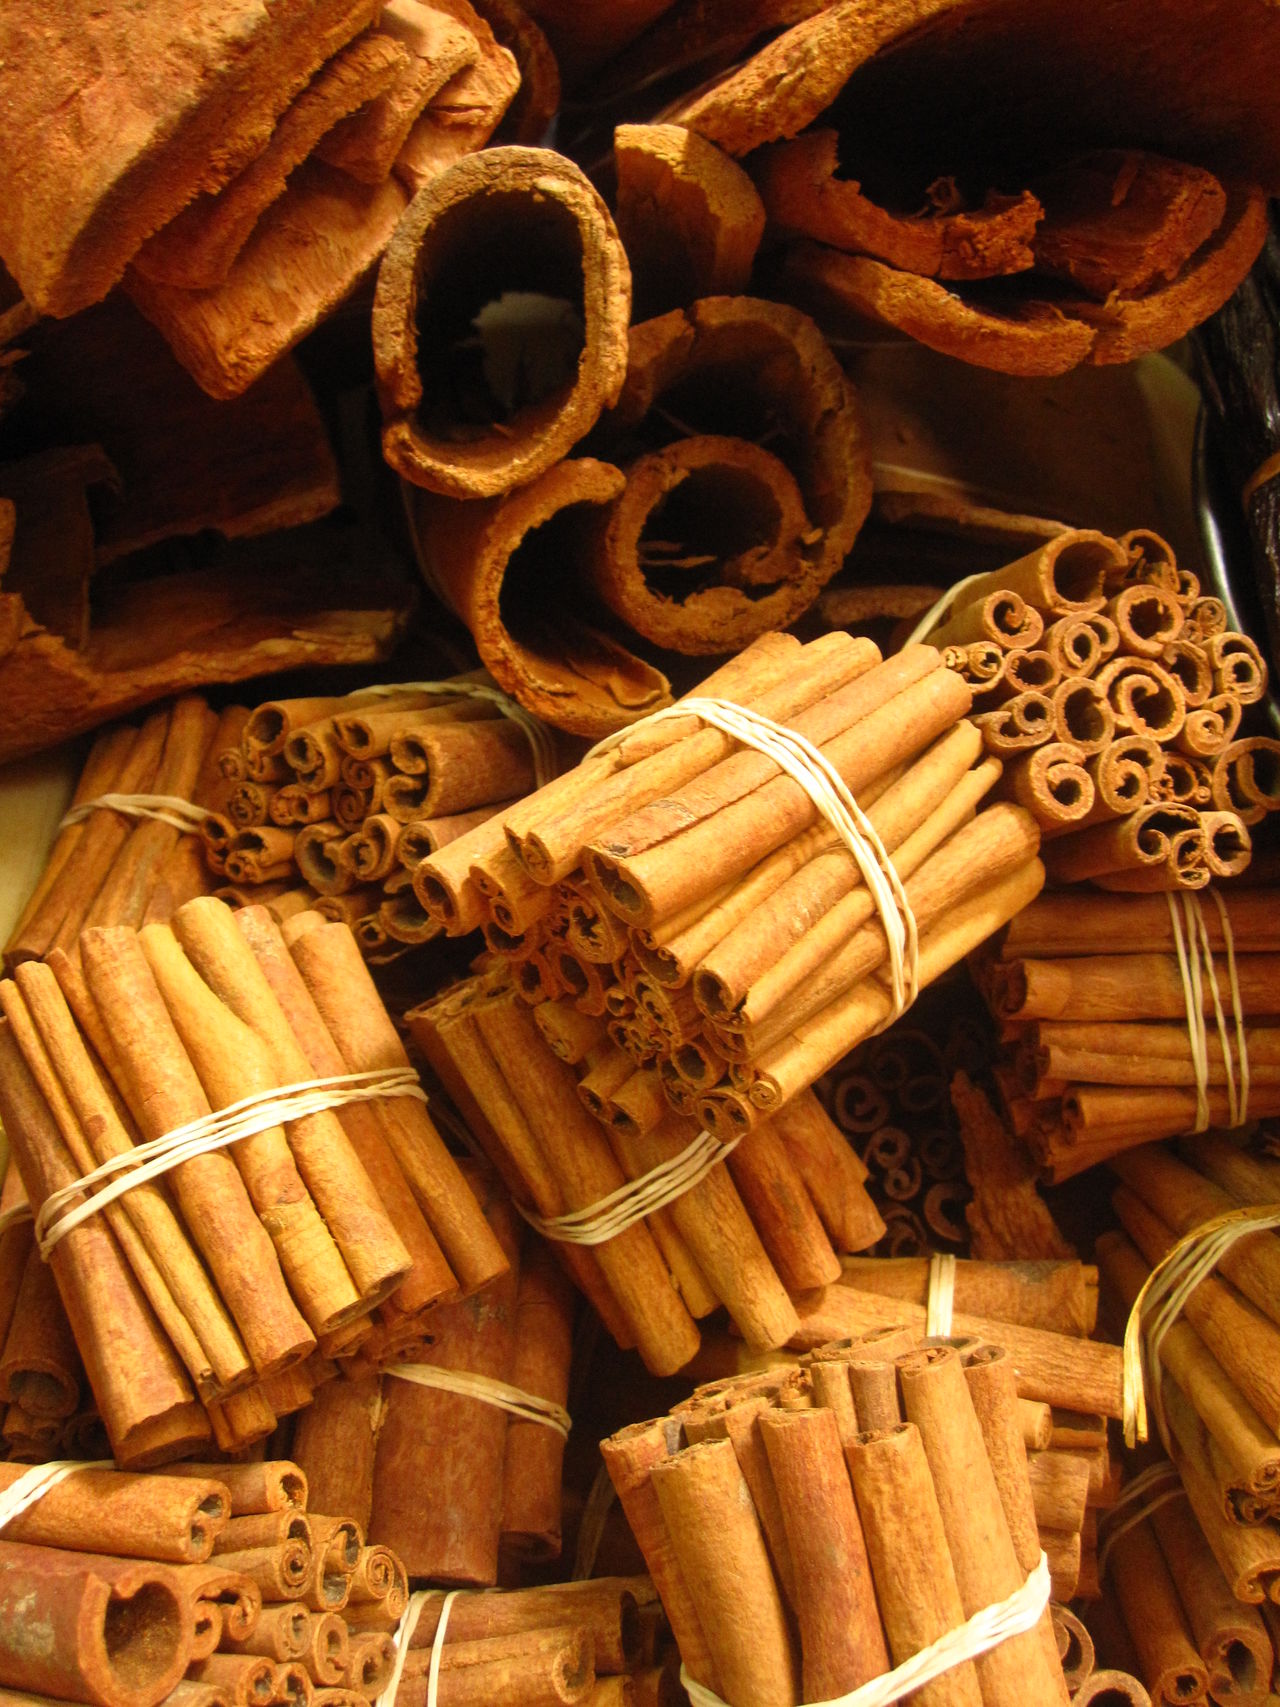 Cinnamon in bundles